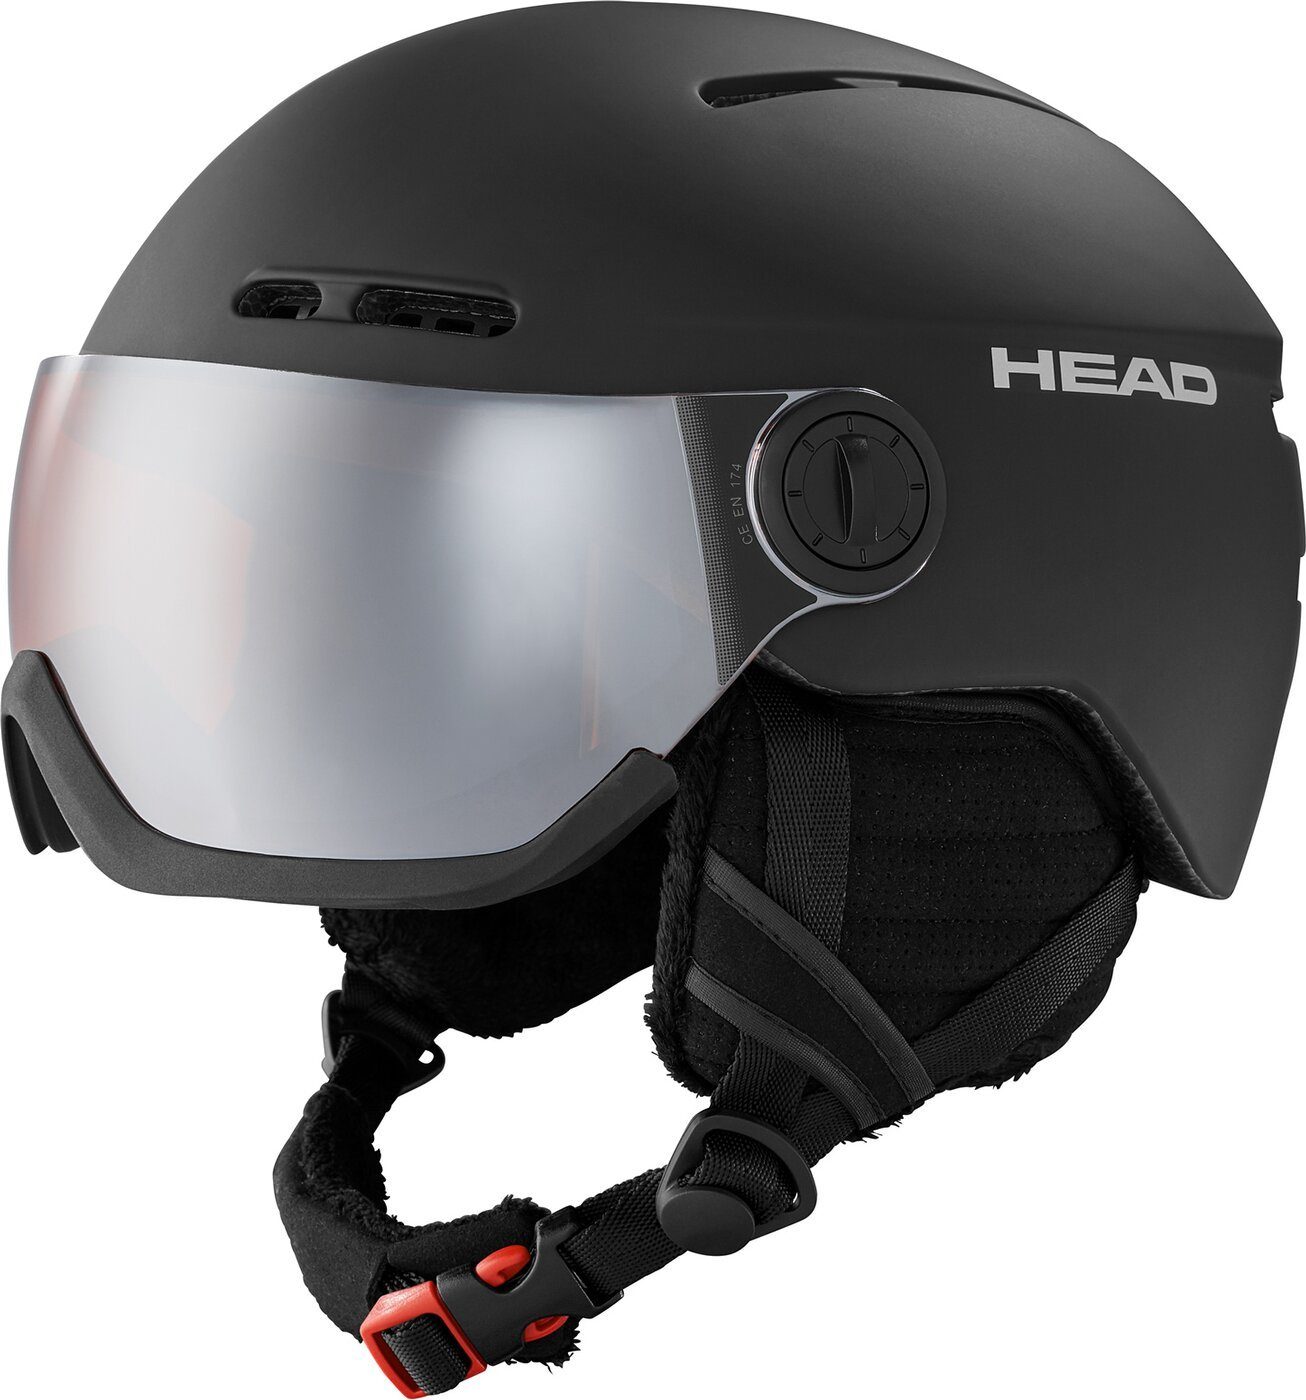 Head Skihelm mit Visier - Head Radar schwarz/weiss